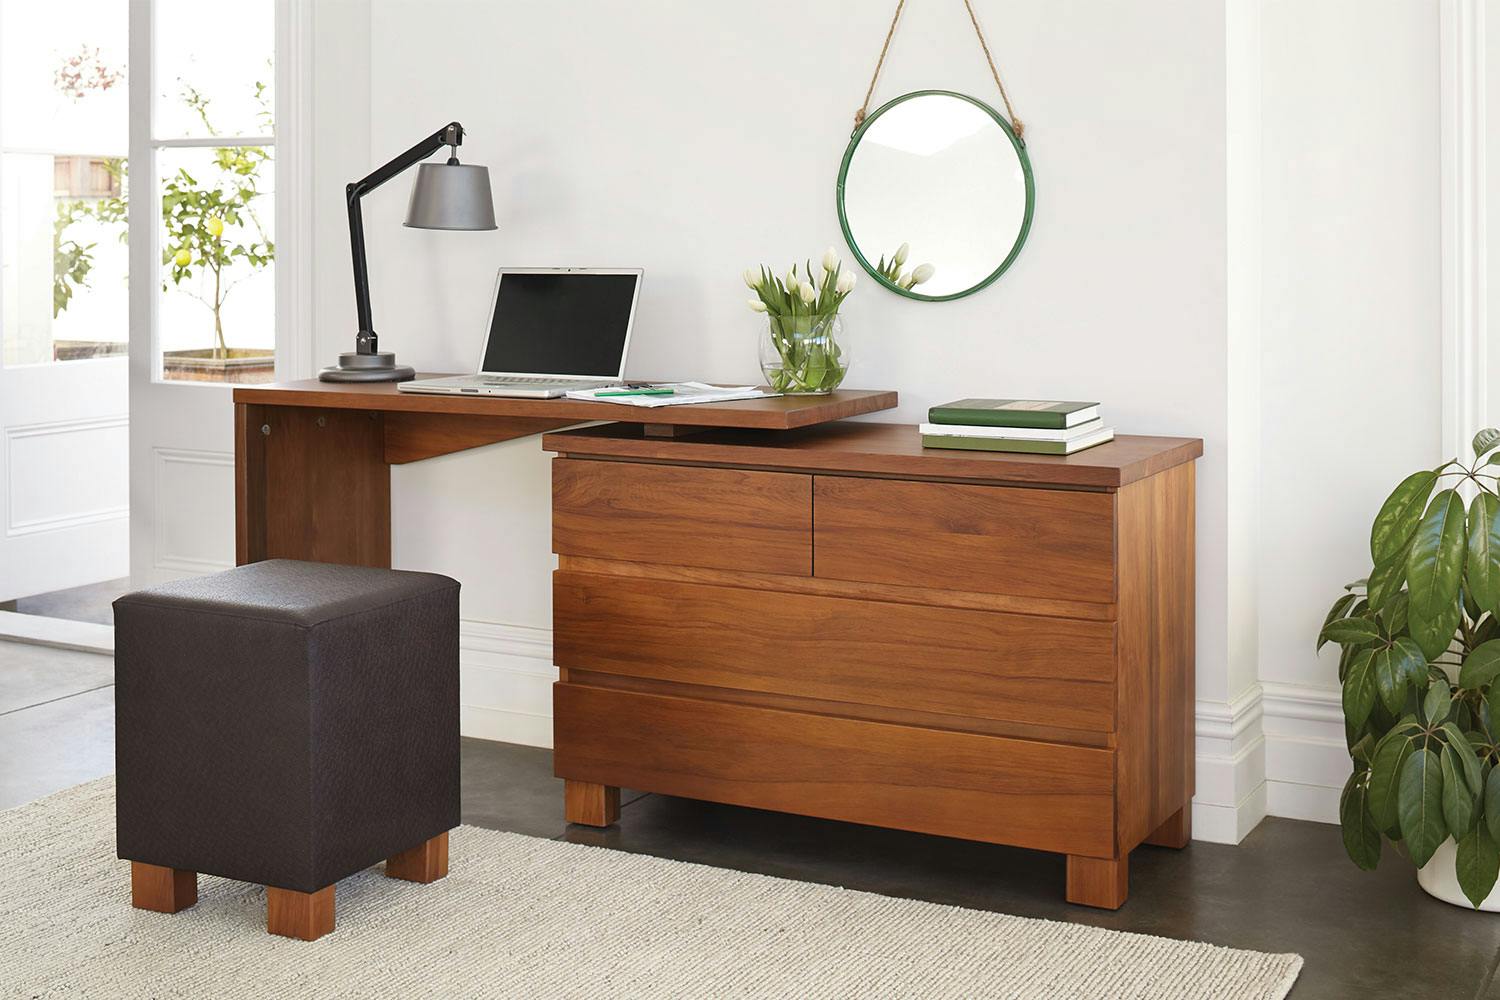 Riverwood 4 Drawer Dresser And Desk By Sorensen Furniture Harvey